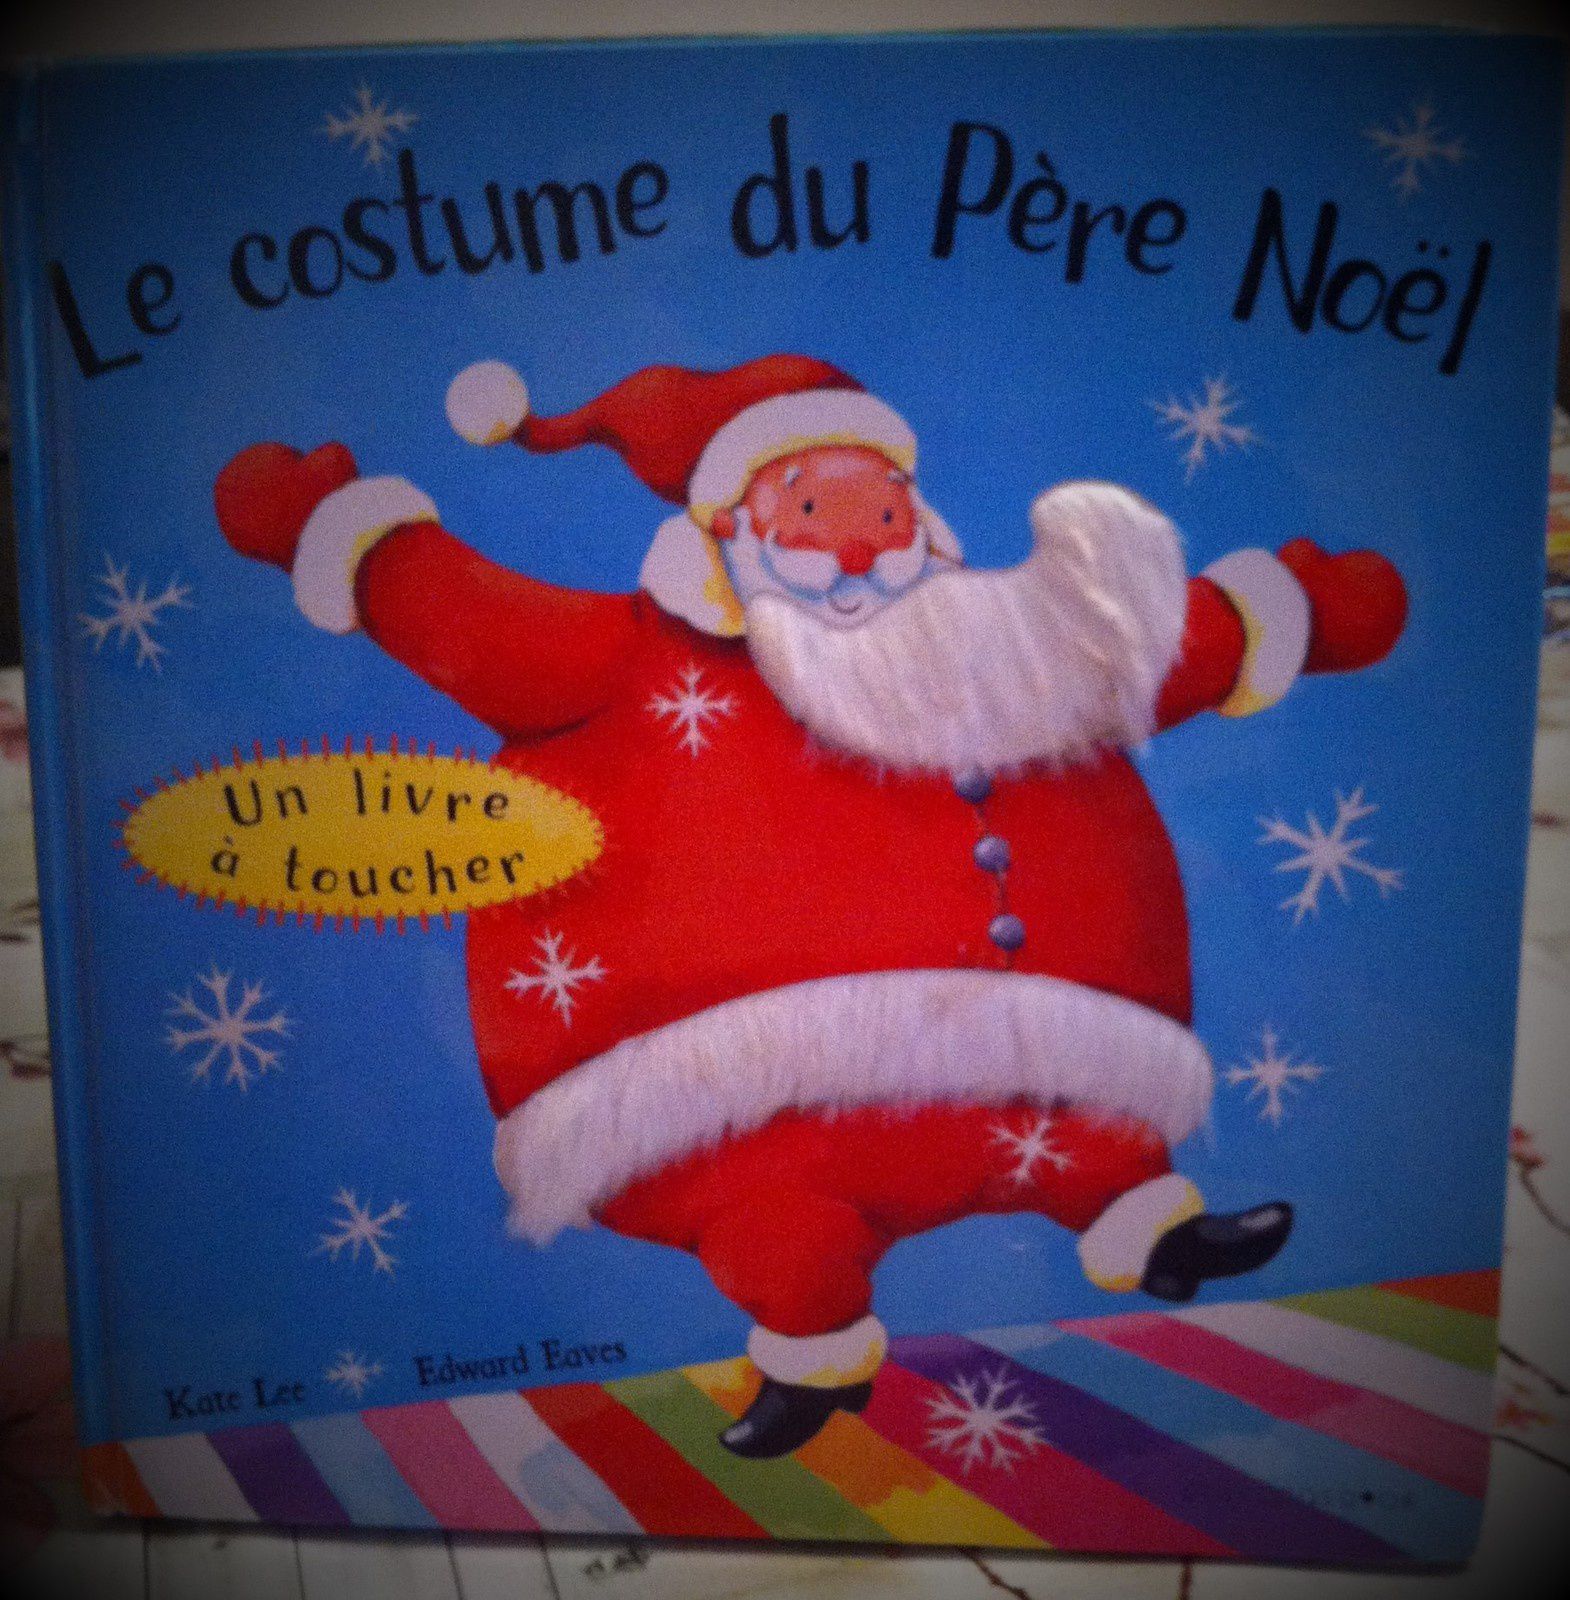 Chut les enfants lisent #74 :&quot; La valise du Père Noël&quot; et &quot;Le costume du Père Noël&quot;